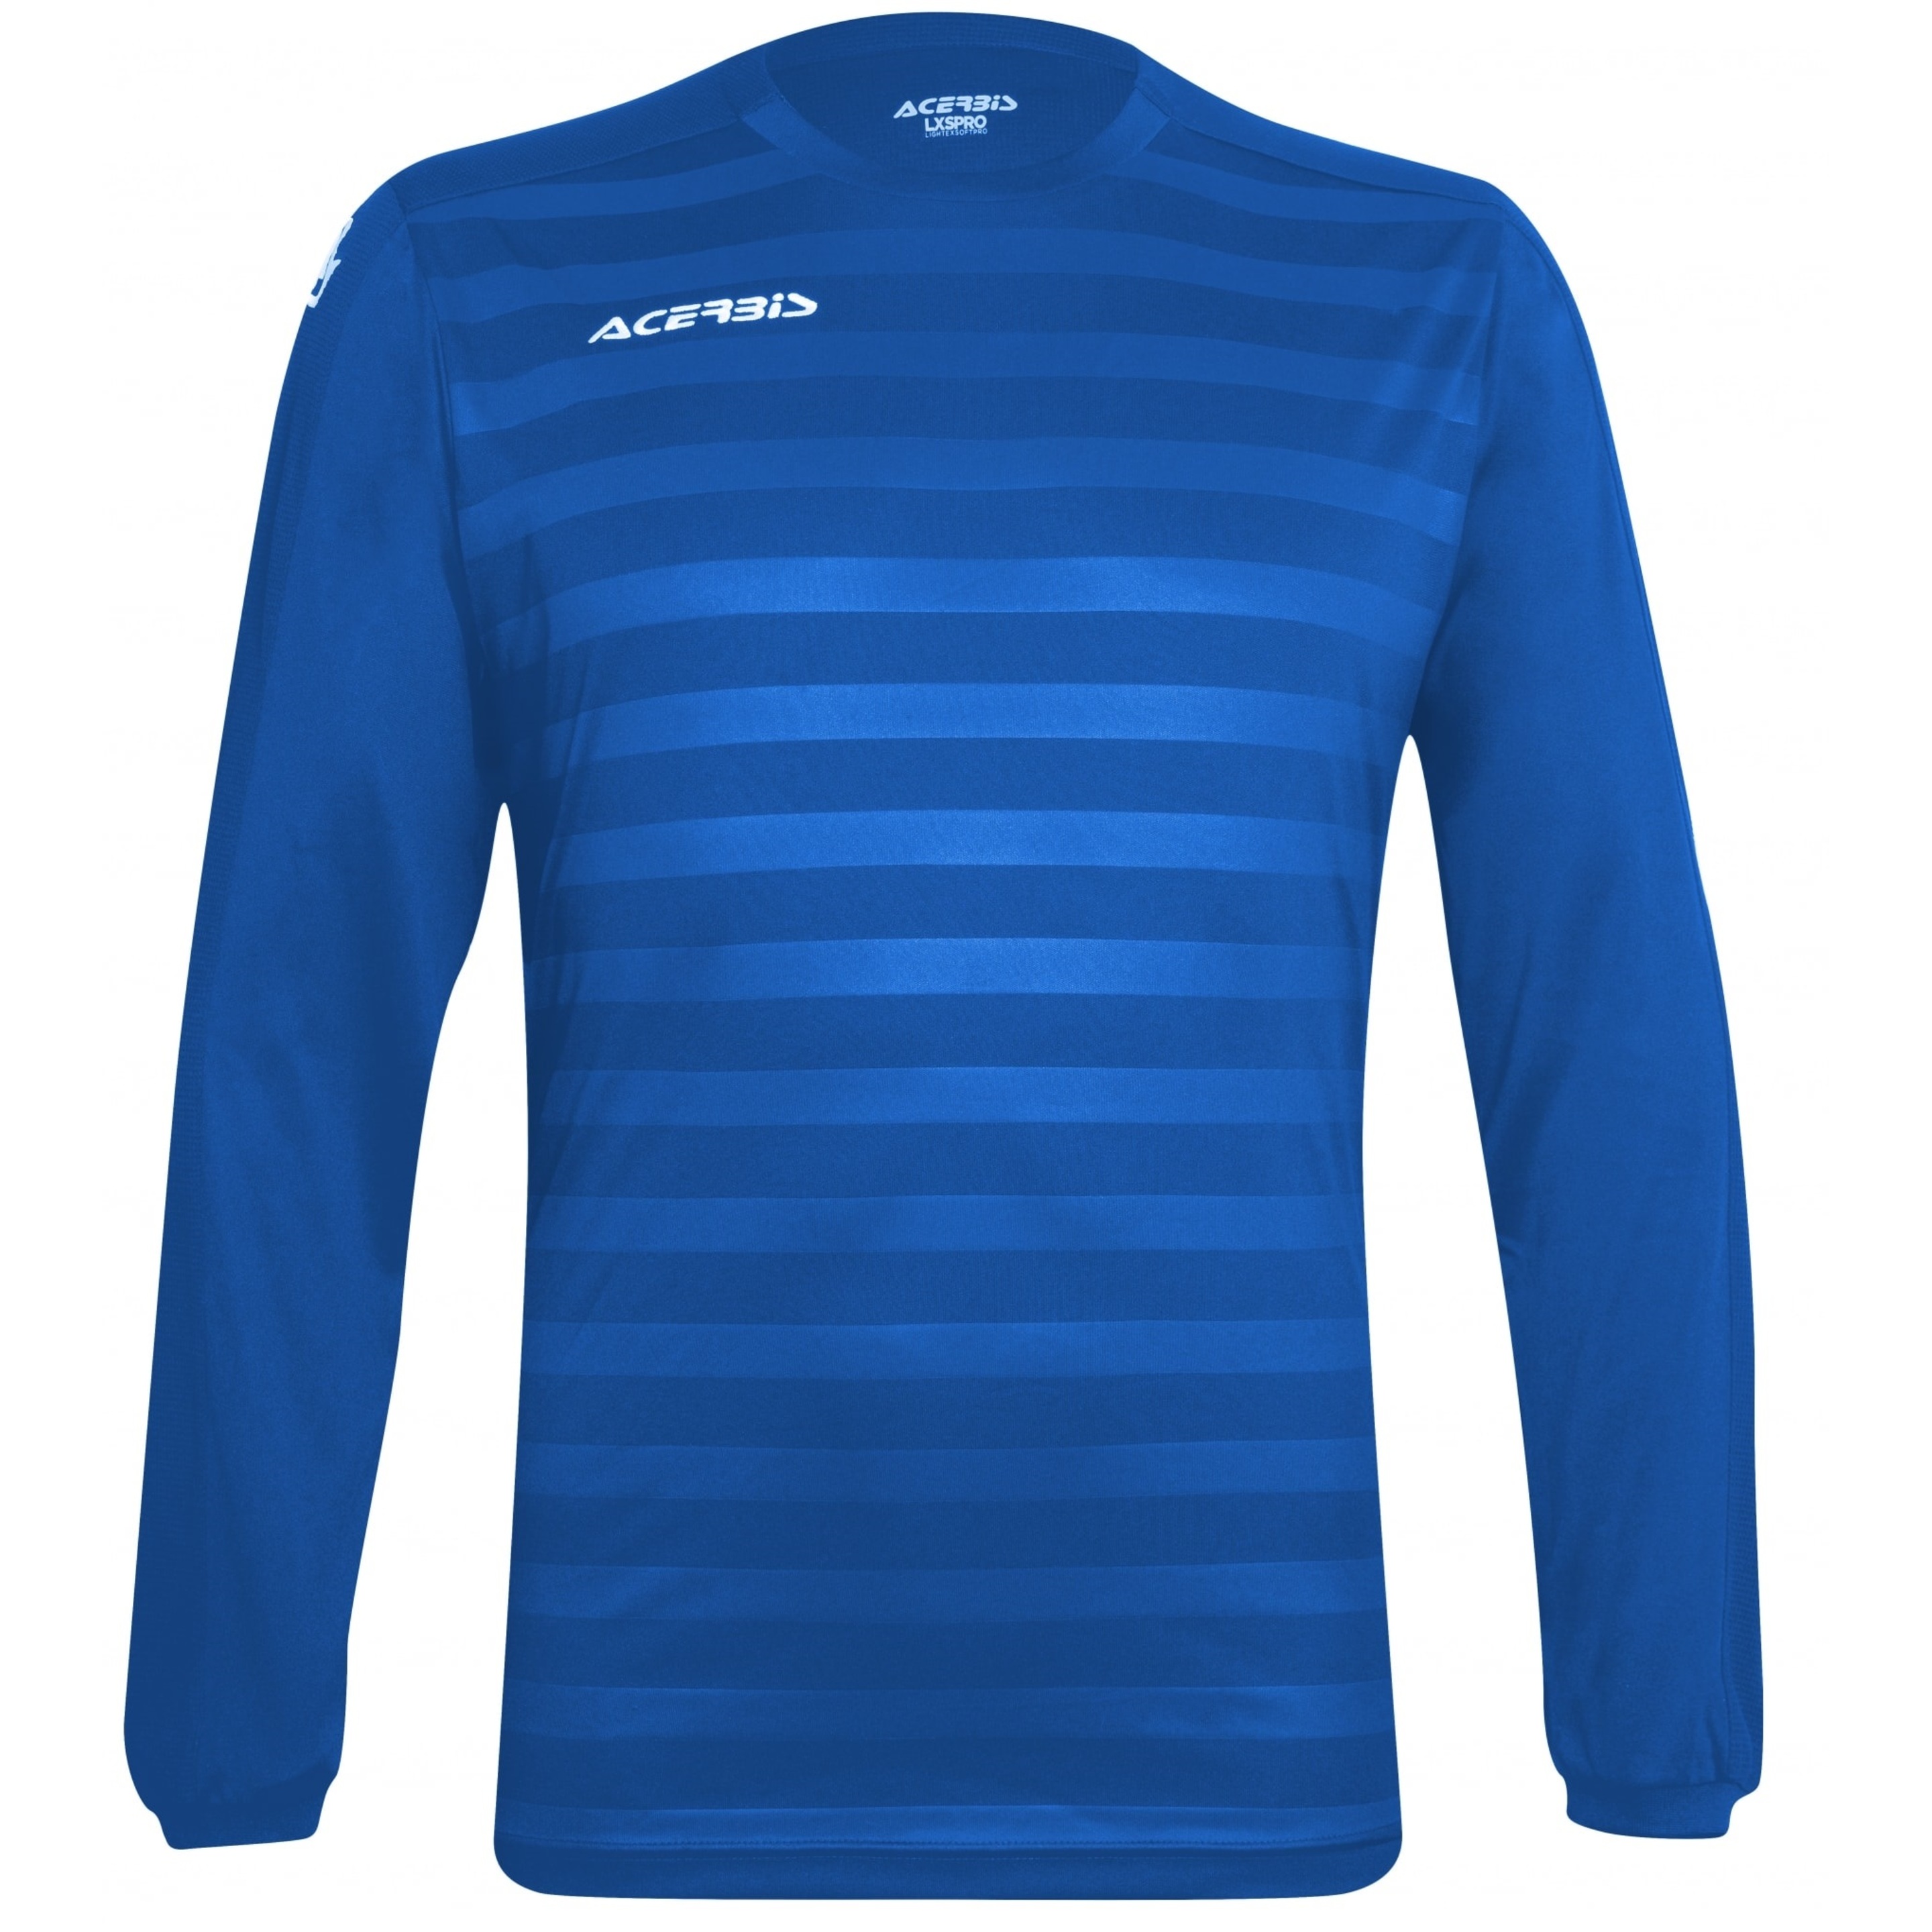 Camiseta Acerbis Atlantis2 Manga Larga - Azul - T-shirt Deportiva  MKP